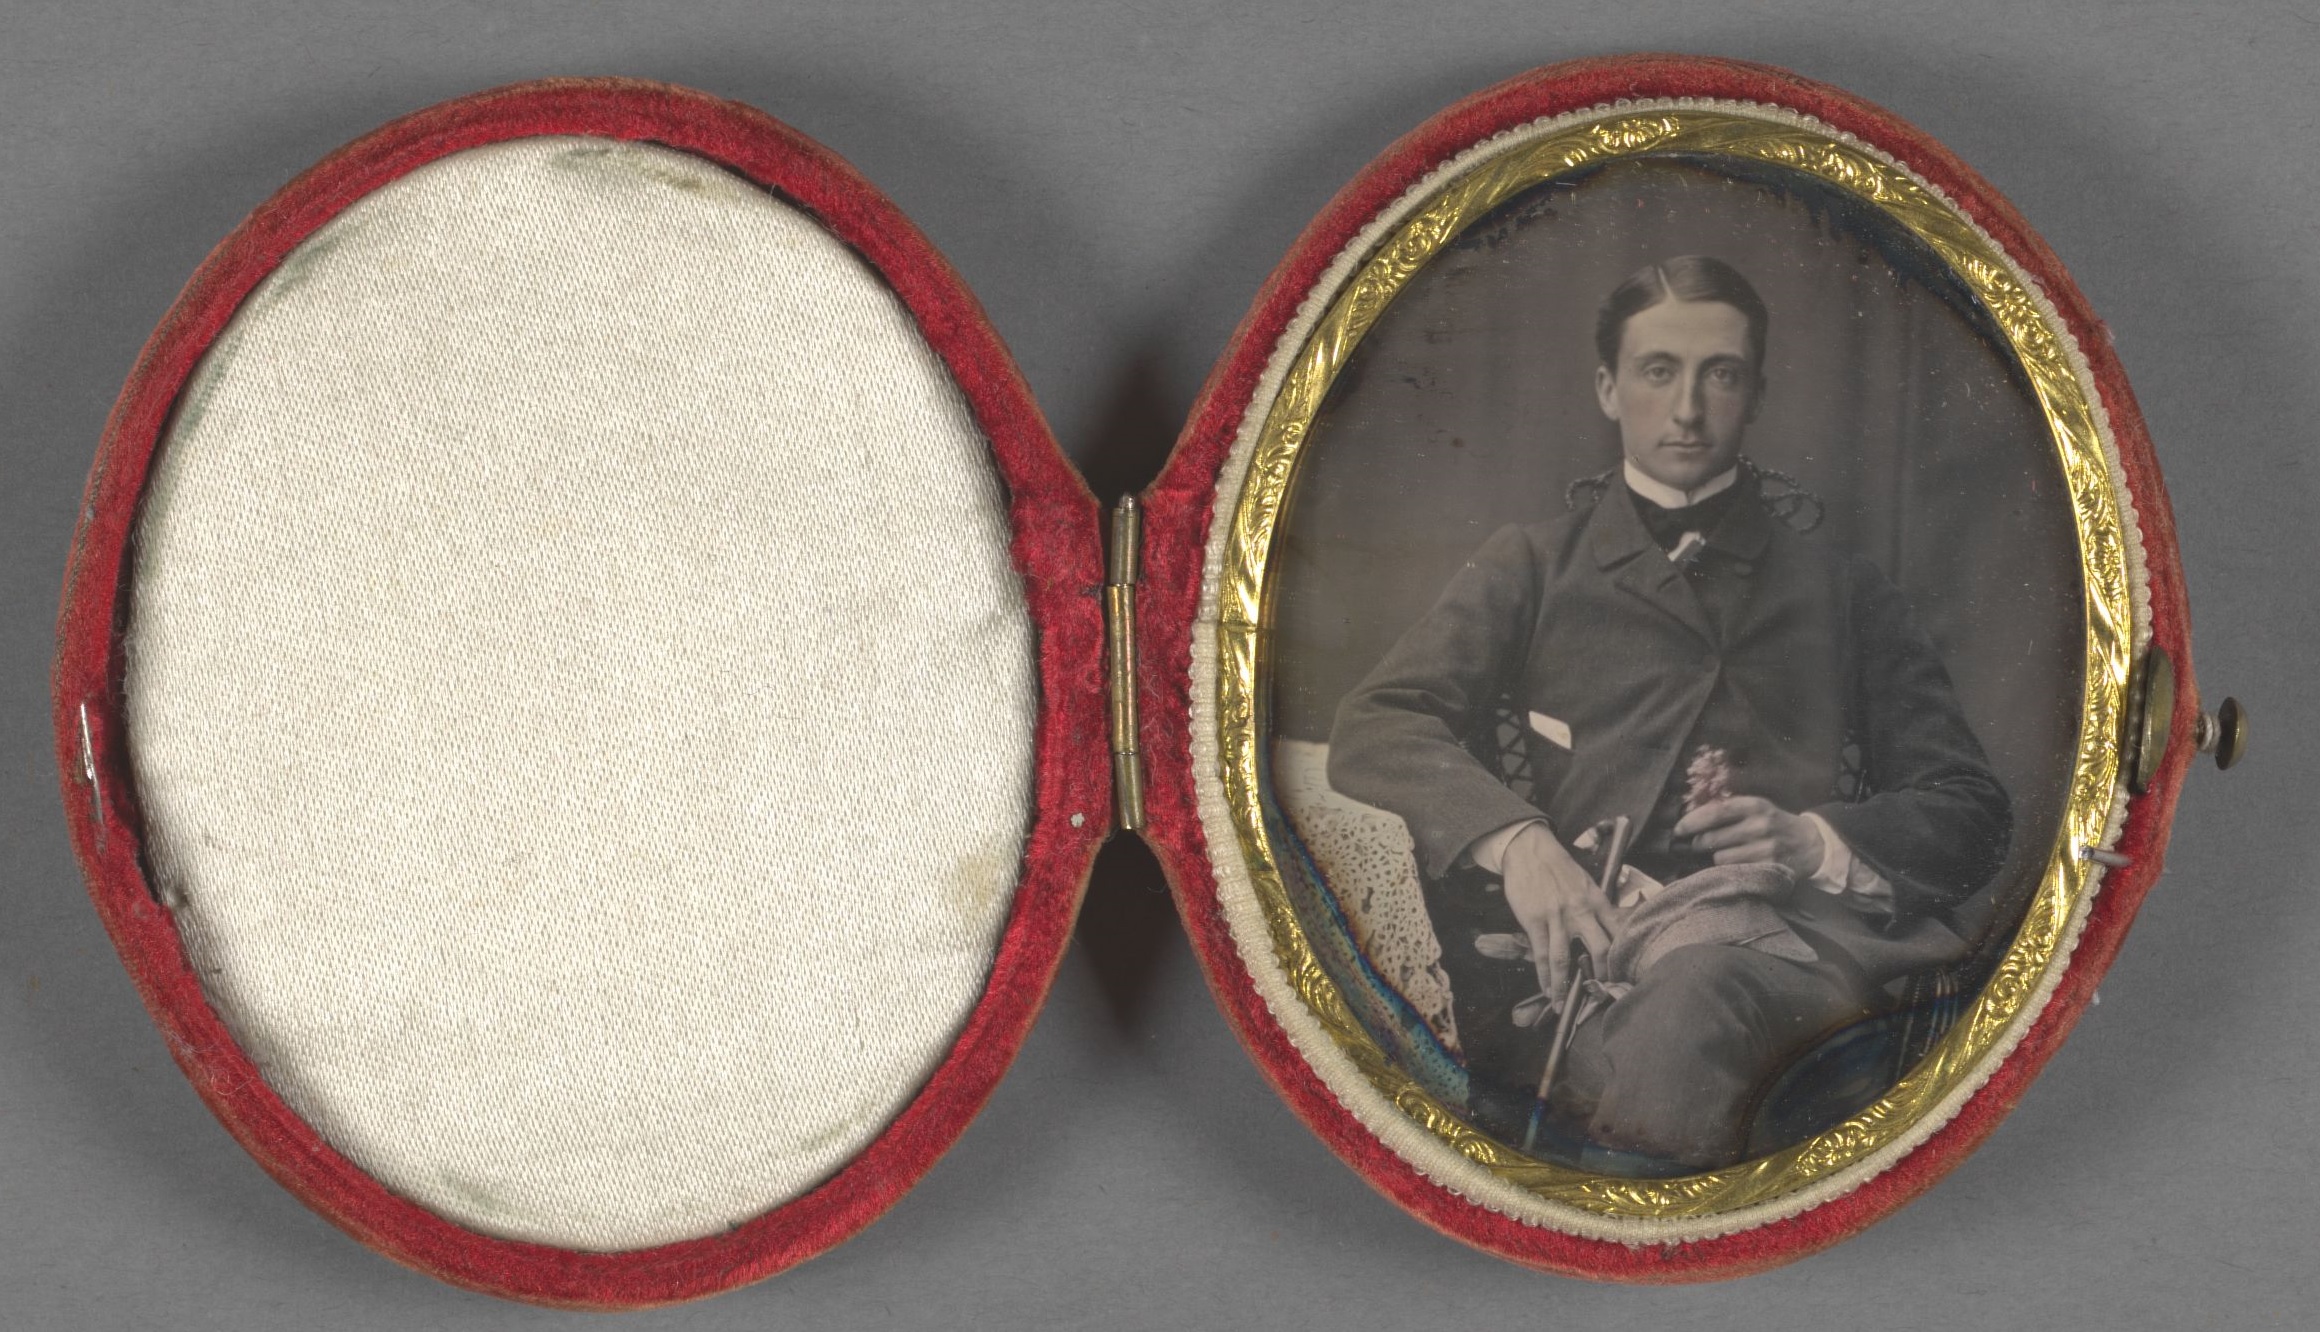 Greve C. G. Wrangel sitter tillbakalutad i rock och kravatt med korsade ben. I vänster hand håller han en käpp, handskar och en keps och i höger hand en blomma. Fotografiet är monterat i en oval ask.